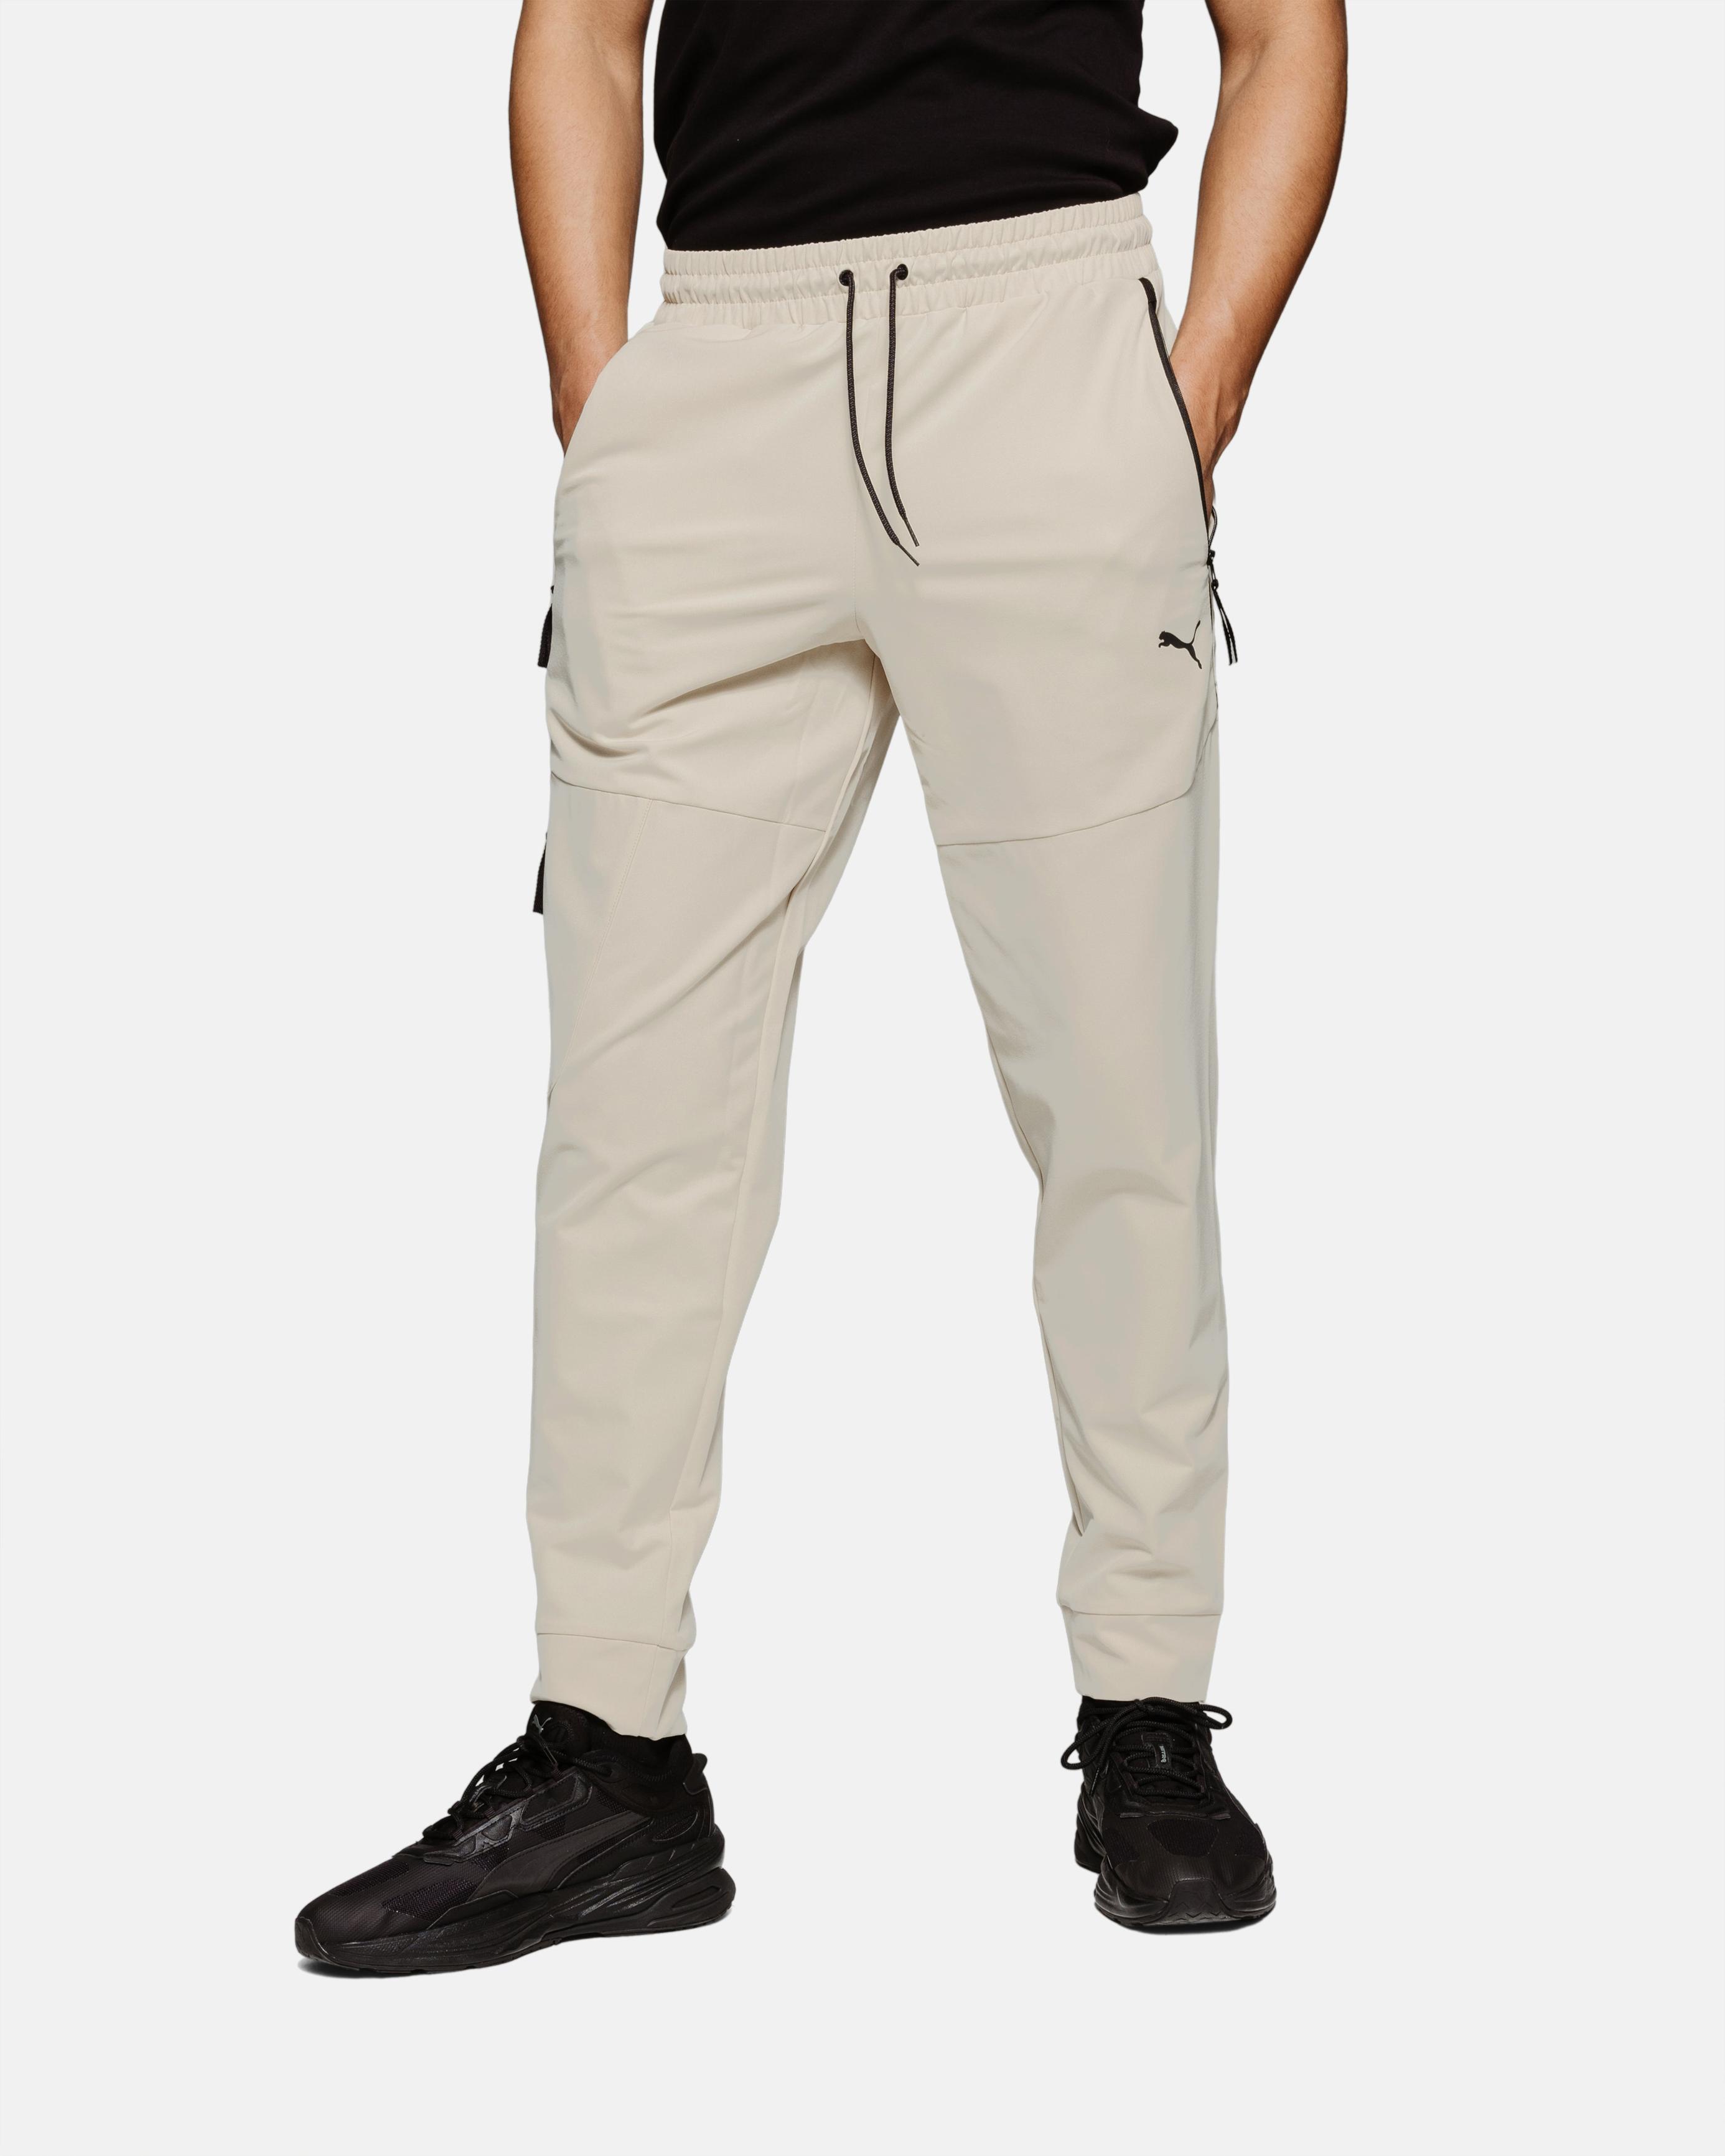 Pantalon Puma Tech - Beige                                        3               couleurs offre à 69,9€ sur Footkorner